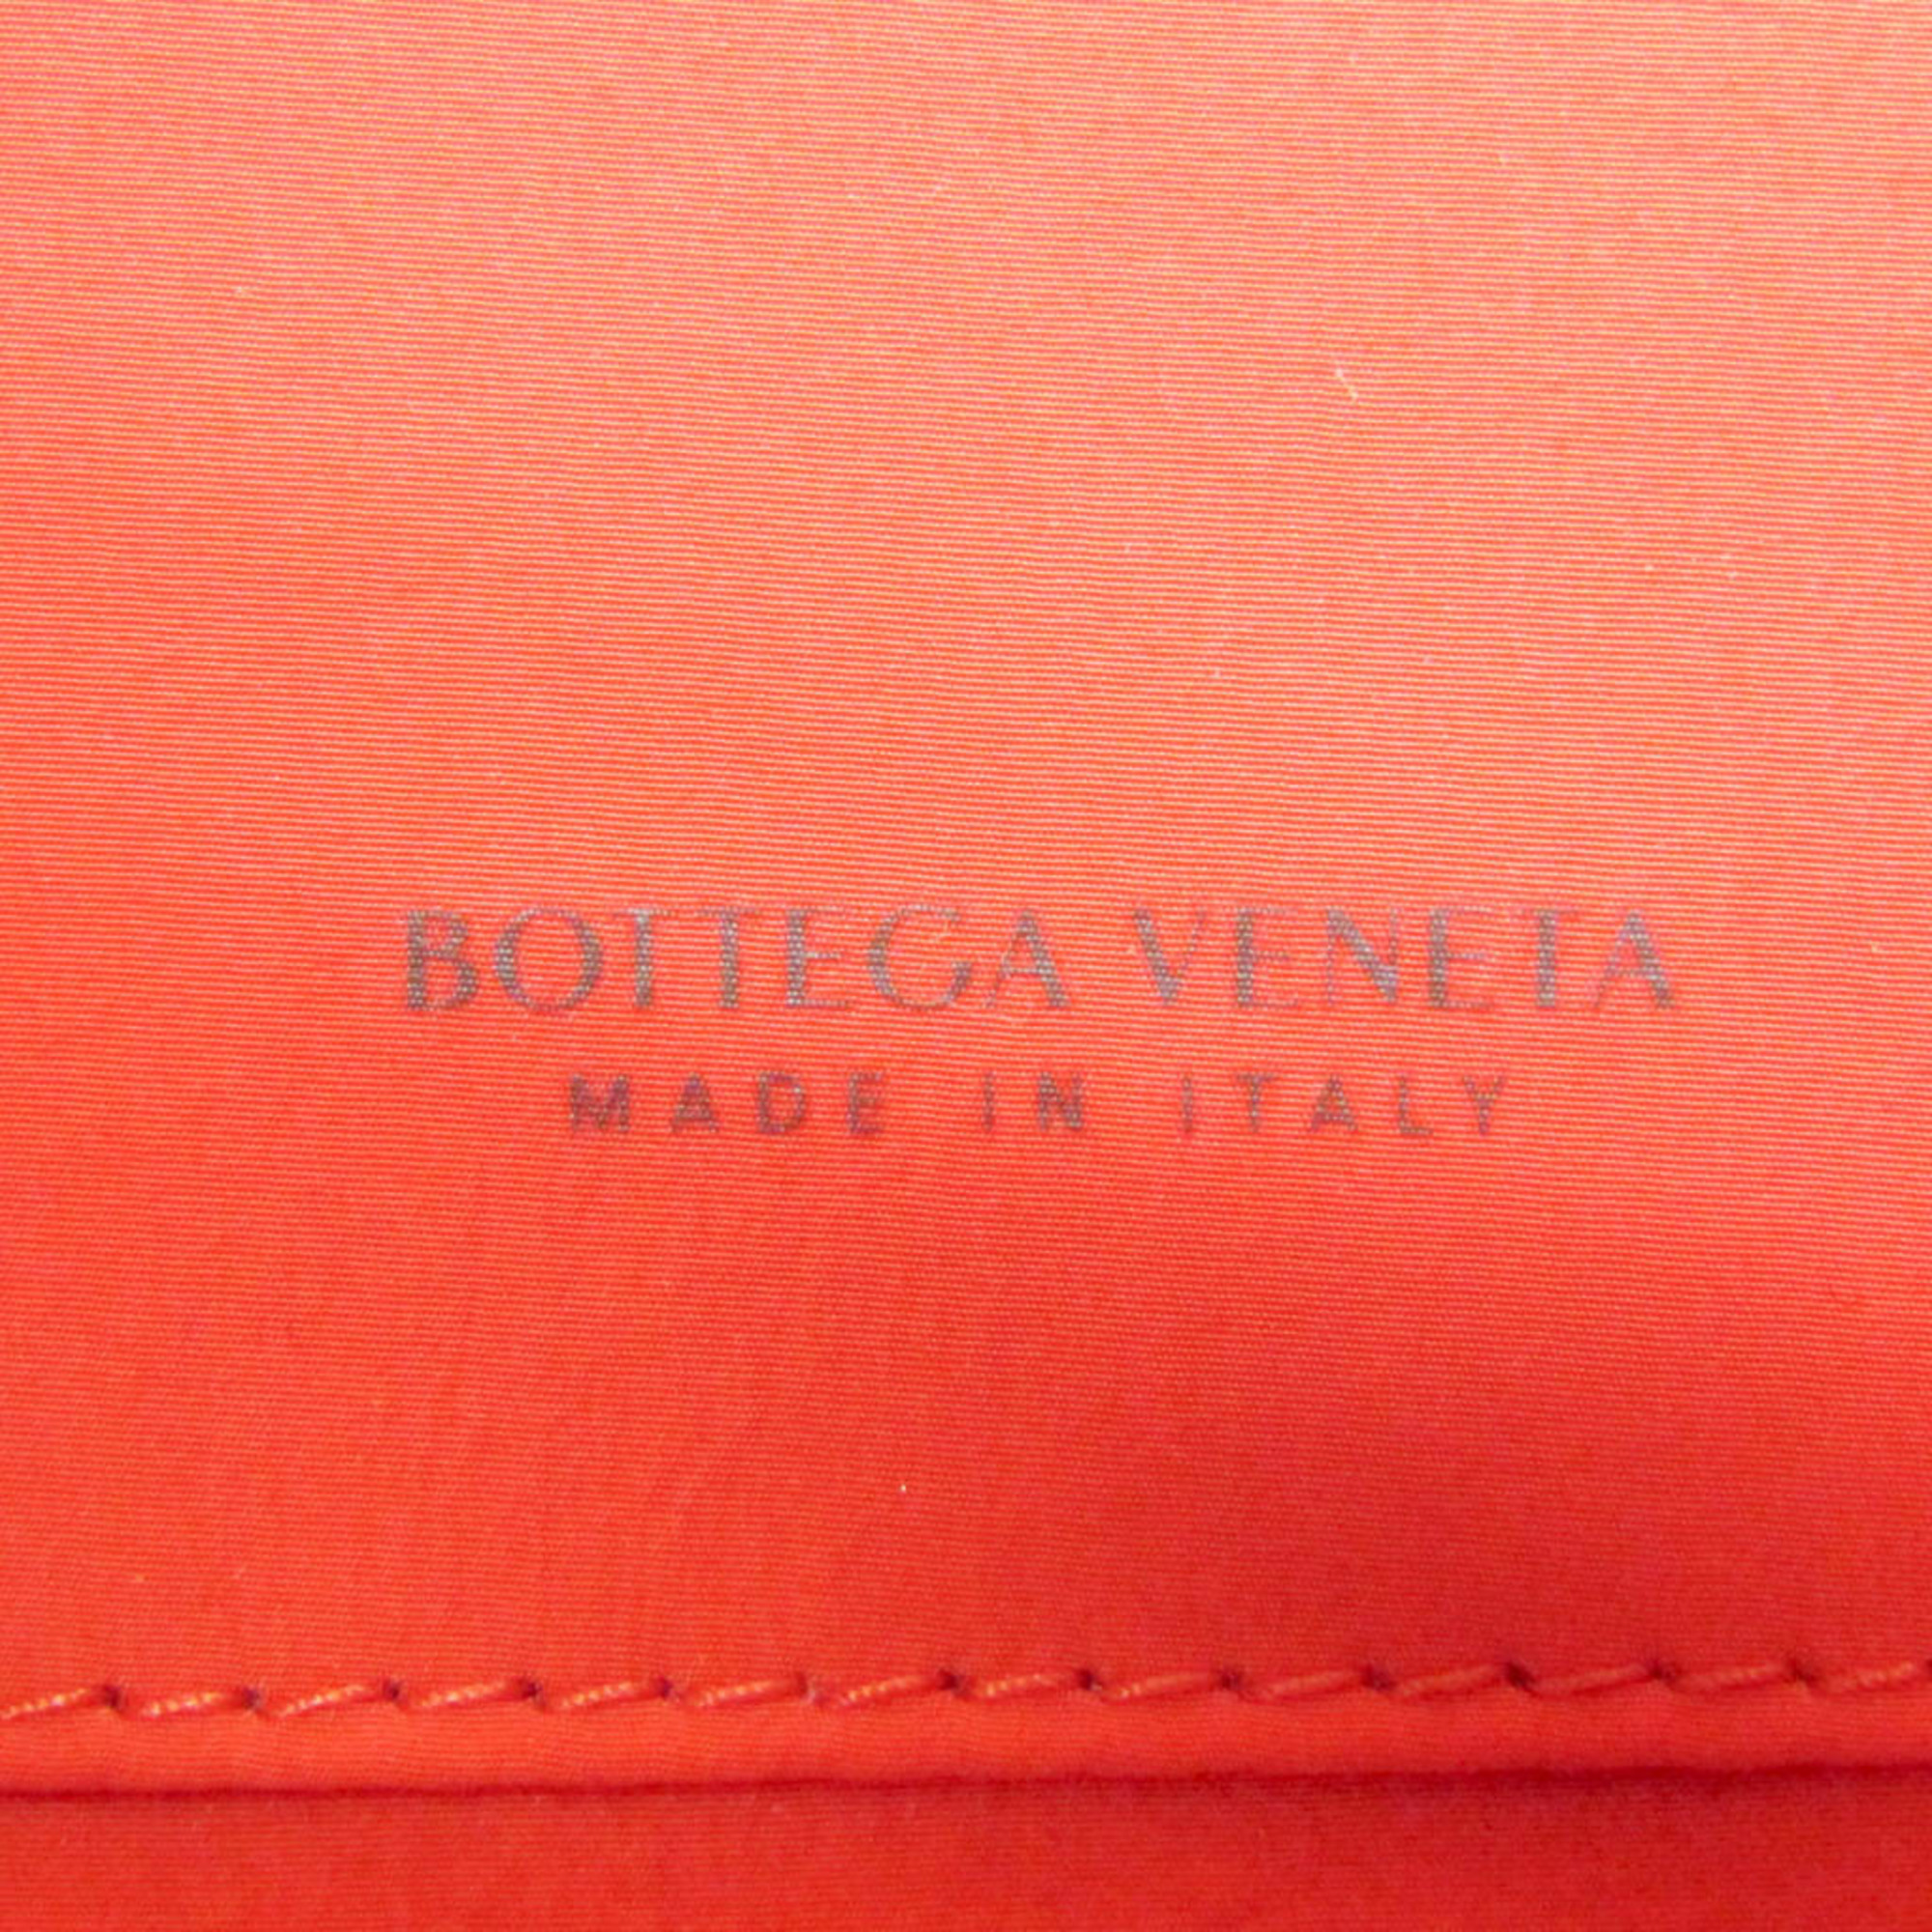 ボッテガ・ヴェネタ(Bottega Veneta) オーガナイザー VA9V3 666770 レディース レザー クラッチバッグ,ポーチ レッド